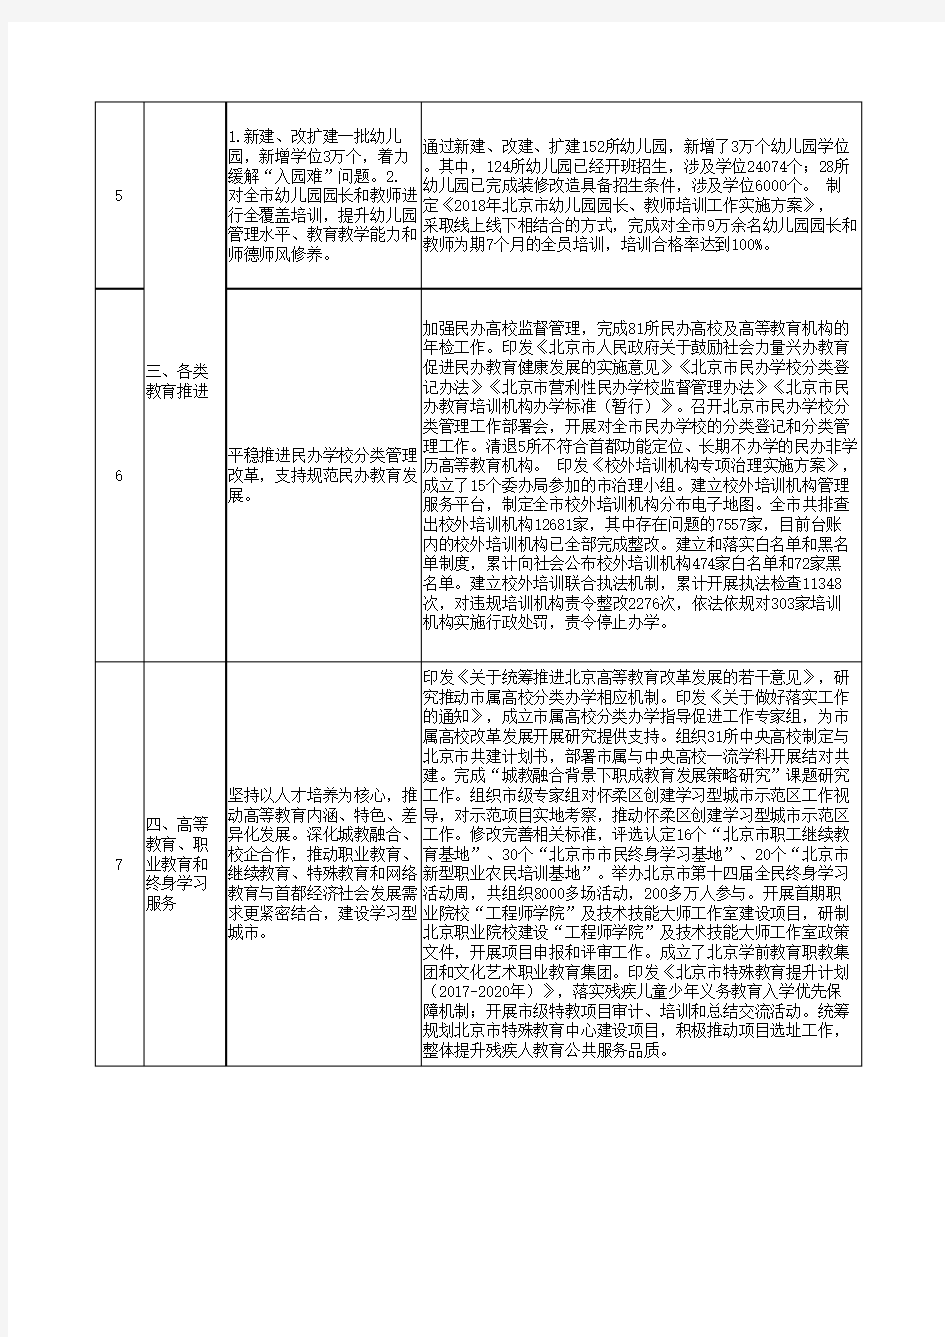 北京市教育委员会2018年度绩效任务完成情况